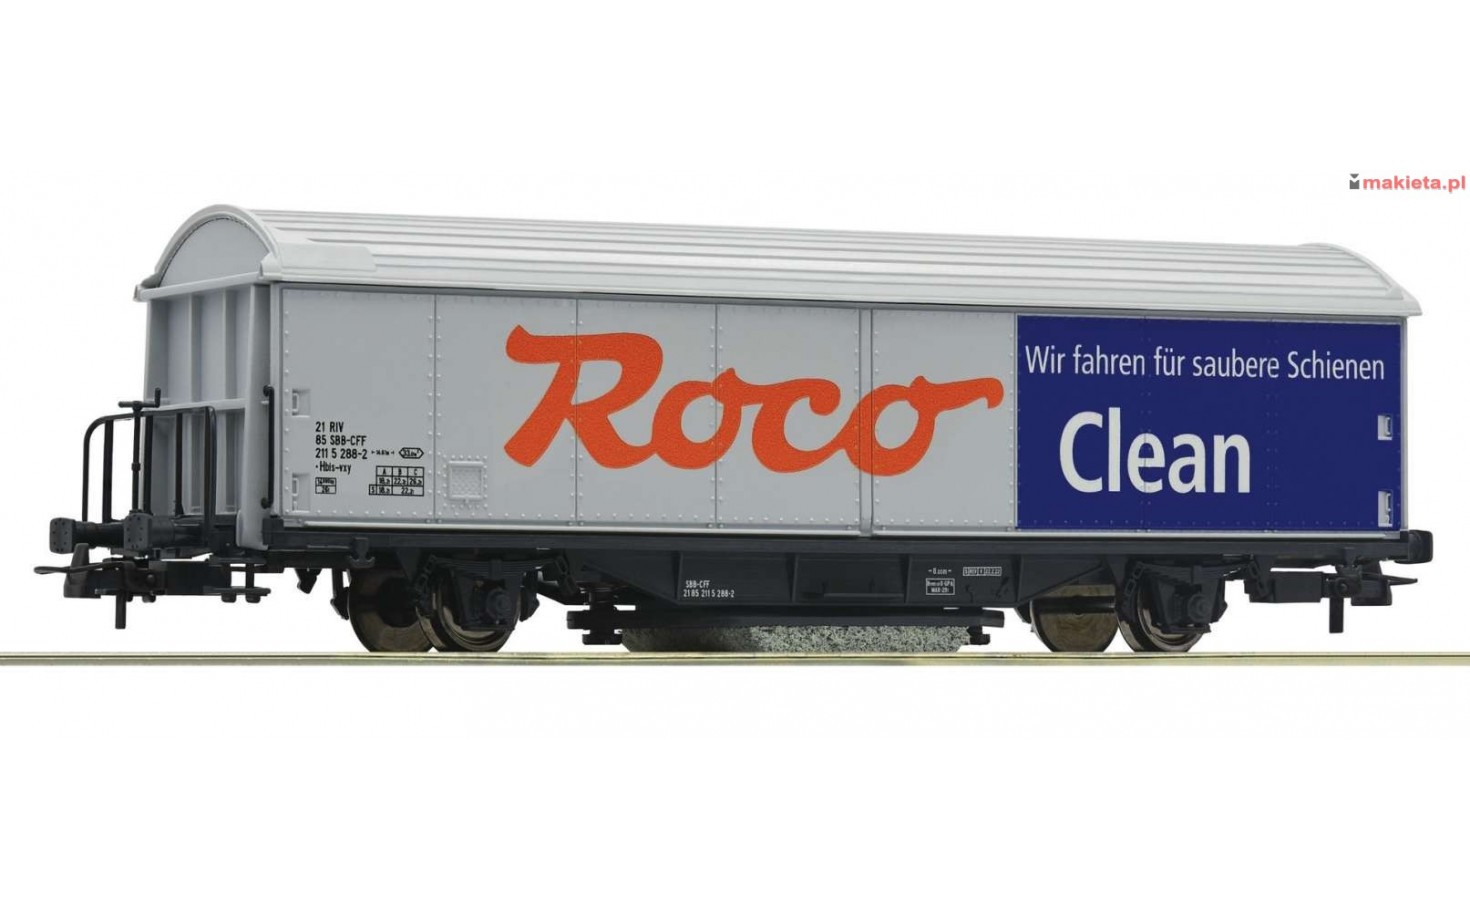 Roco 46400. Wagon czyszczący szyny, skala H0. Roco Clean